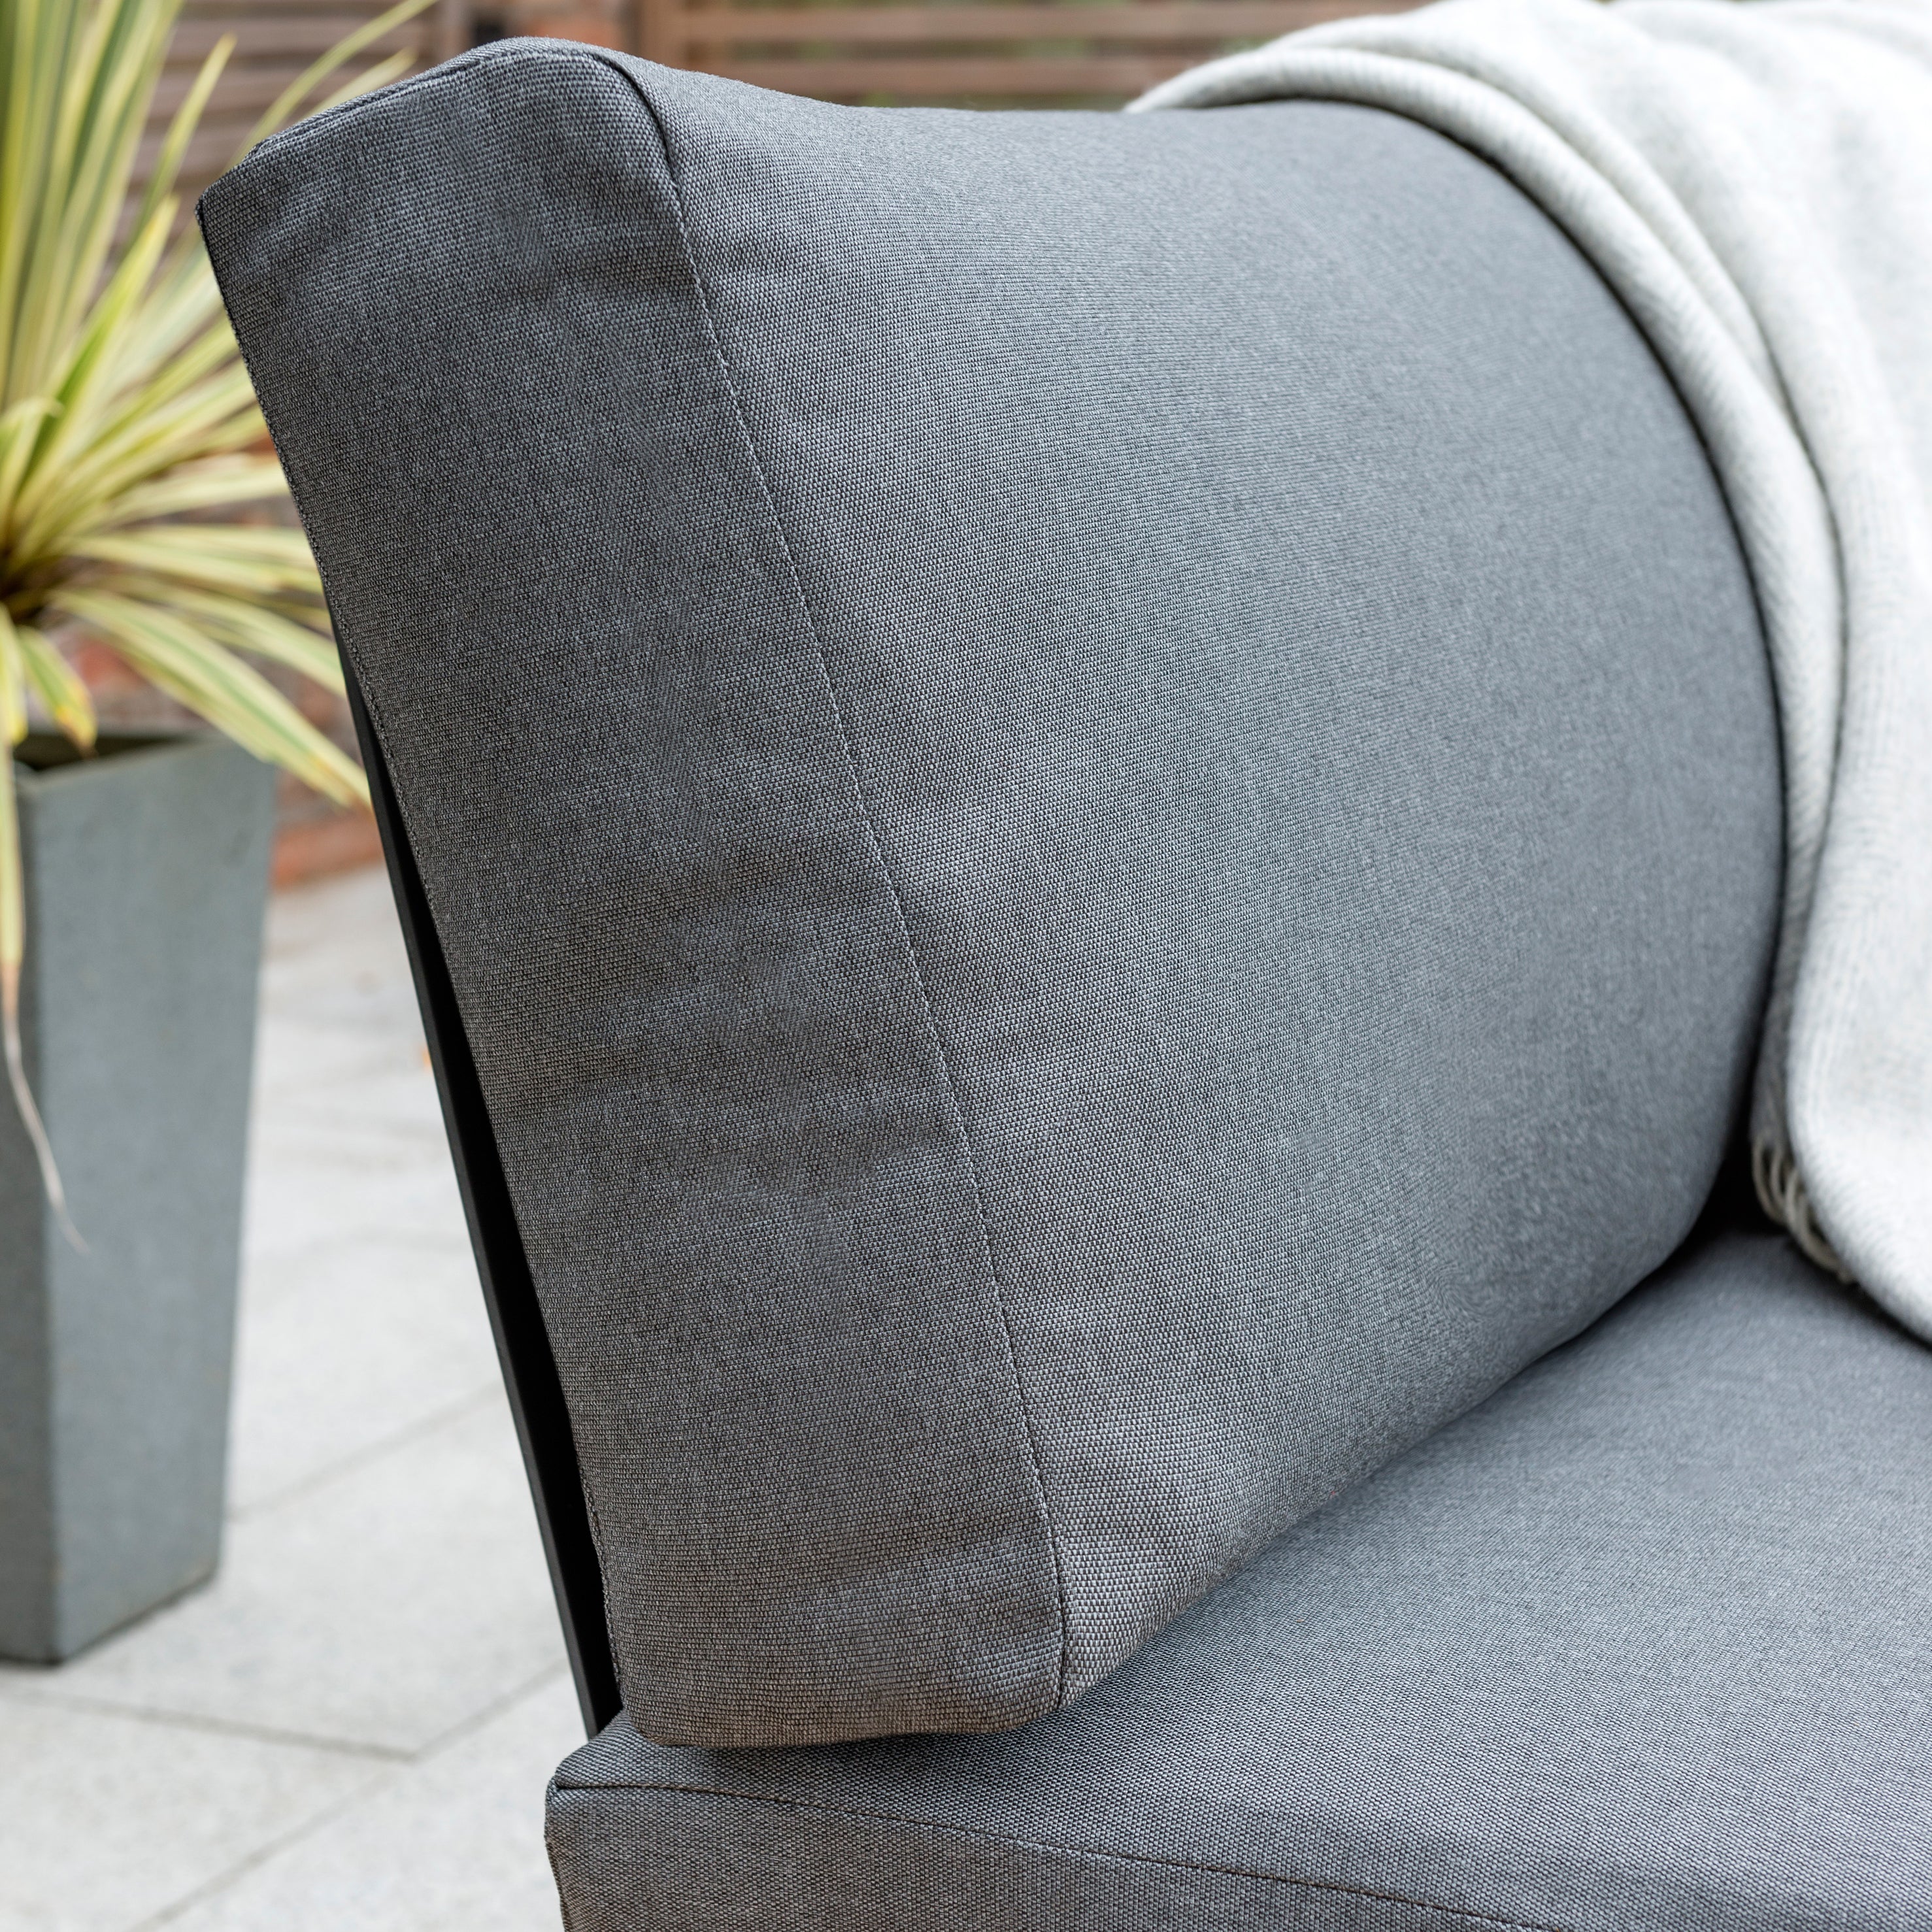 Elba Aluminum Armless Lounge Chair With Cushion